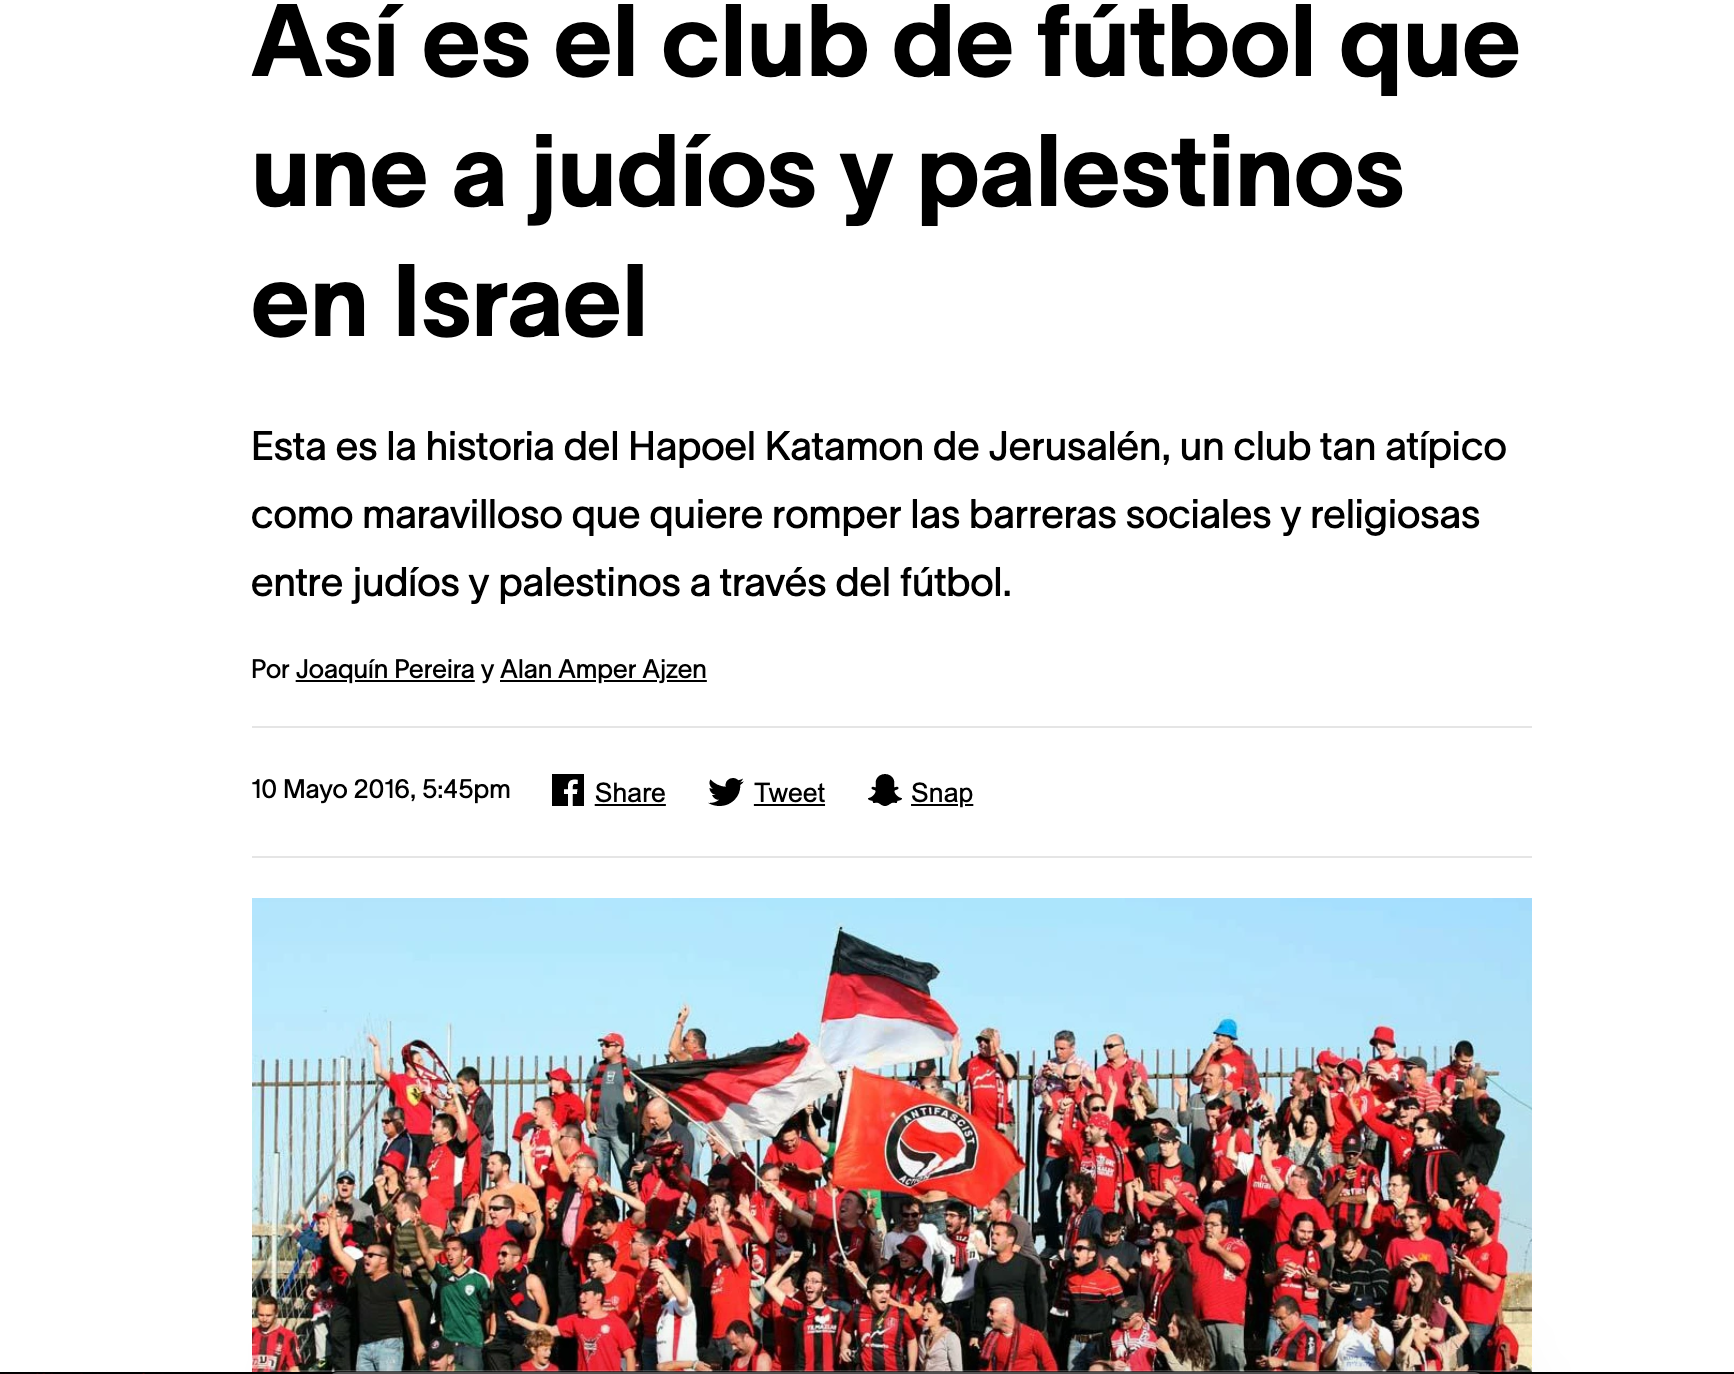 Vice – Así es el club de fútbol que une a judíos y palestinos en Israel